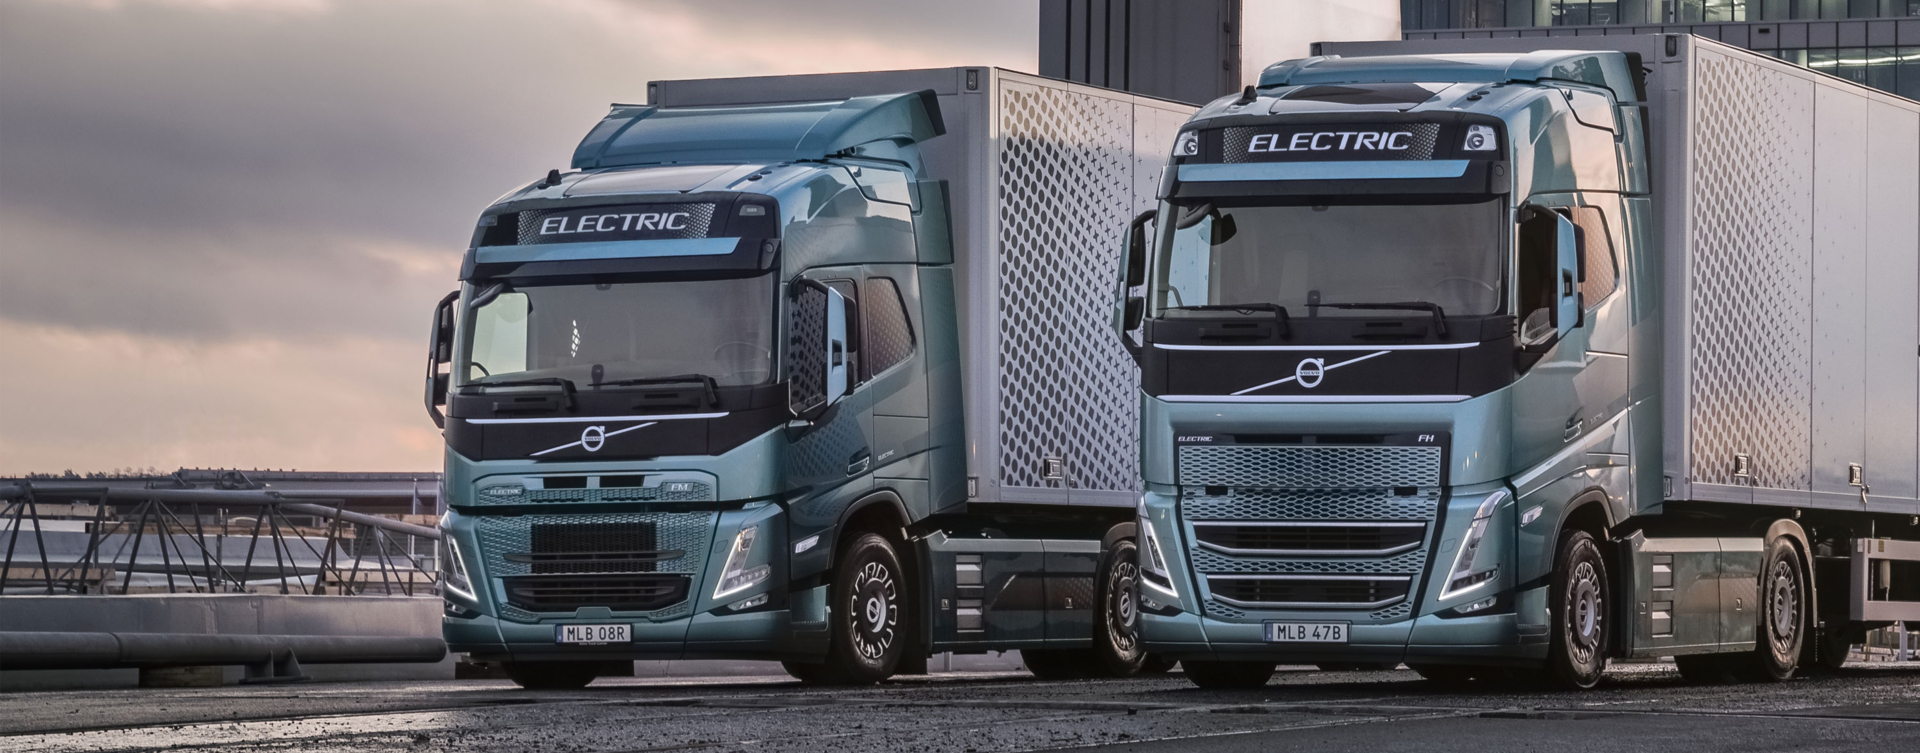 Bluekens-Truck-en-Bus-Volvo-Trucks-Electric-Roadshow